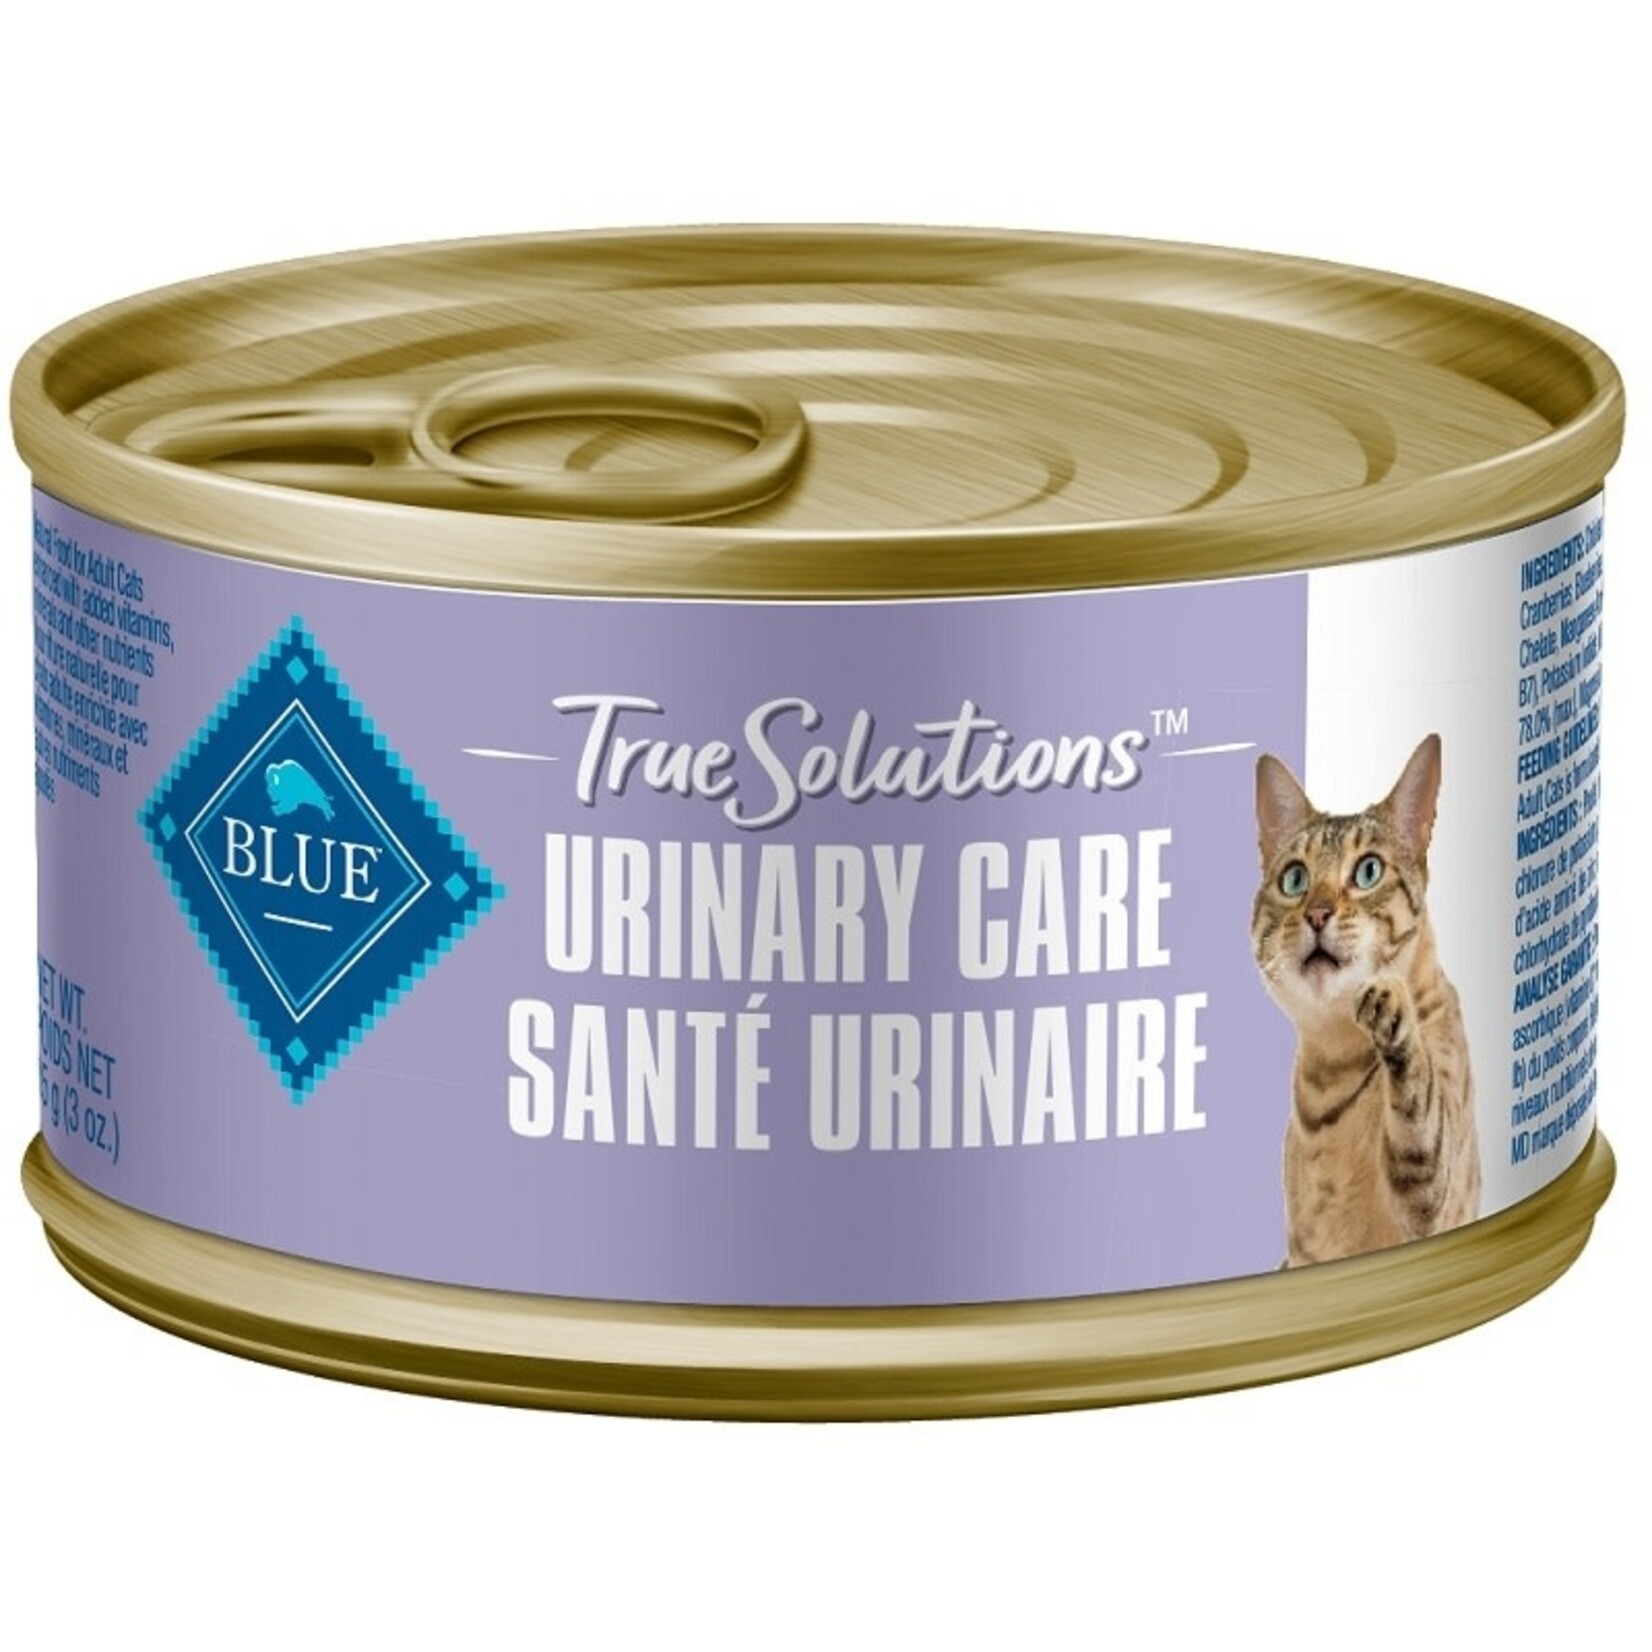 BLUE TRUESOL Can CAT Urinary Care 3oz